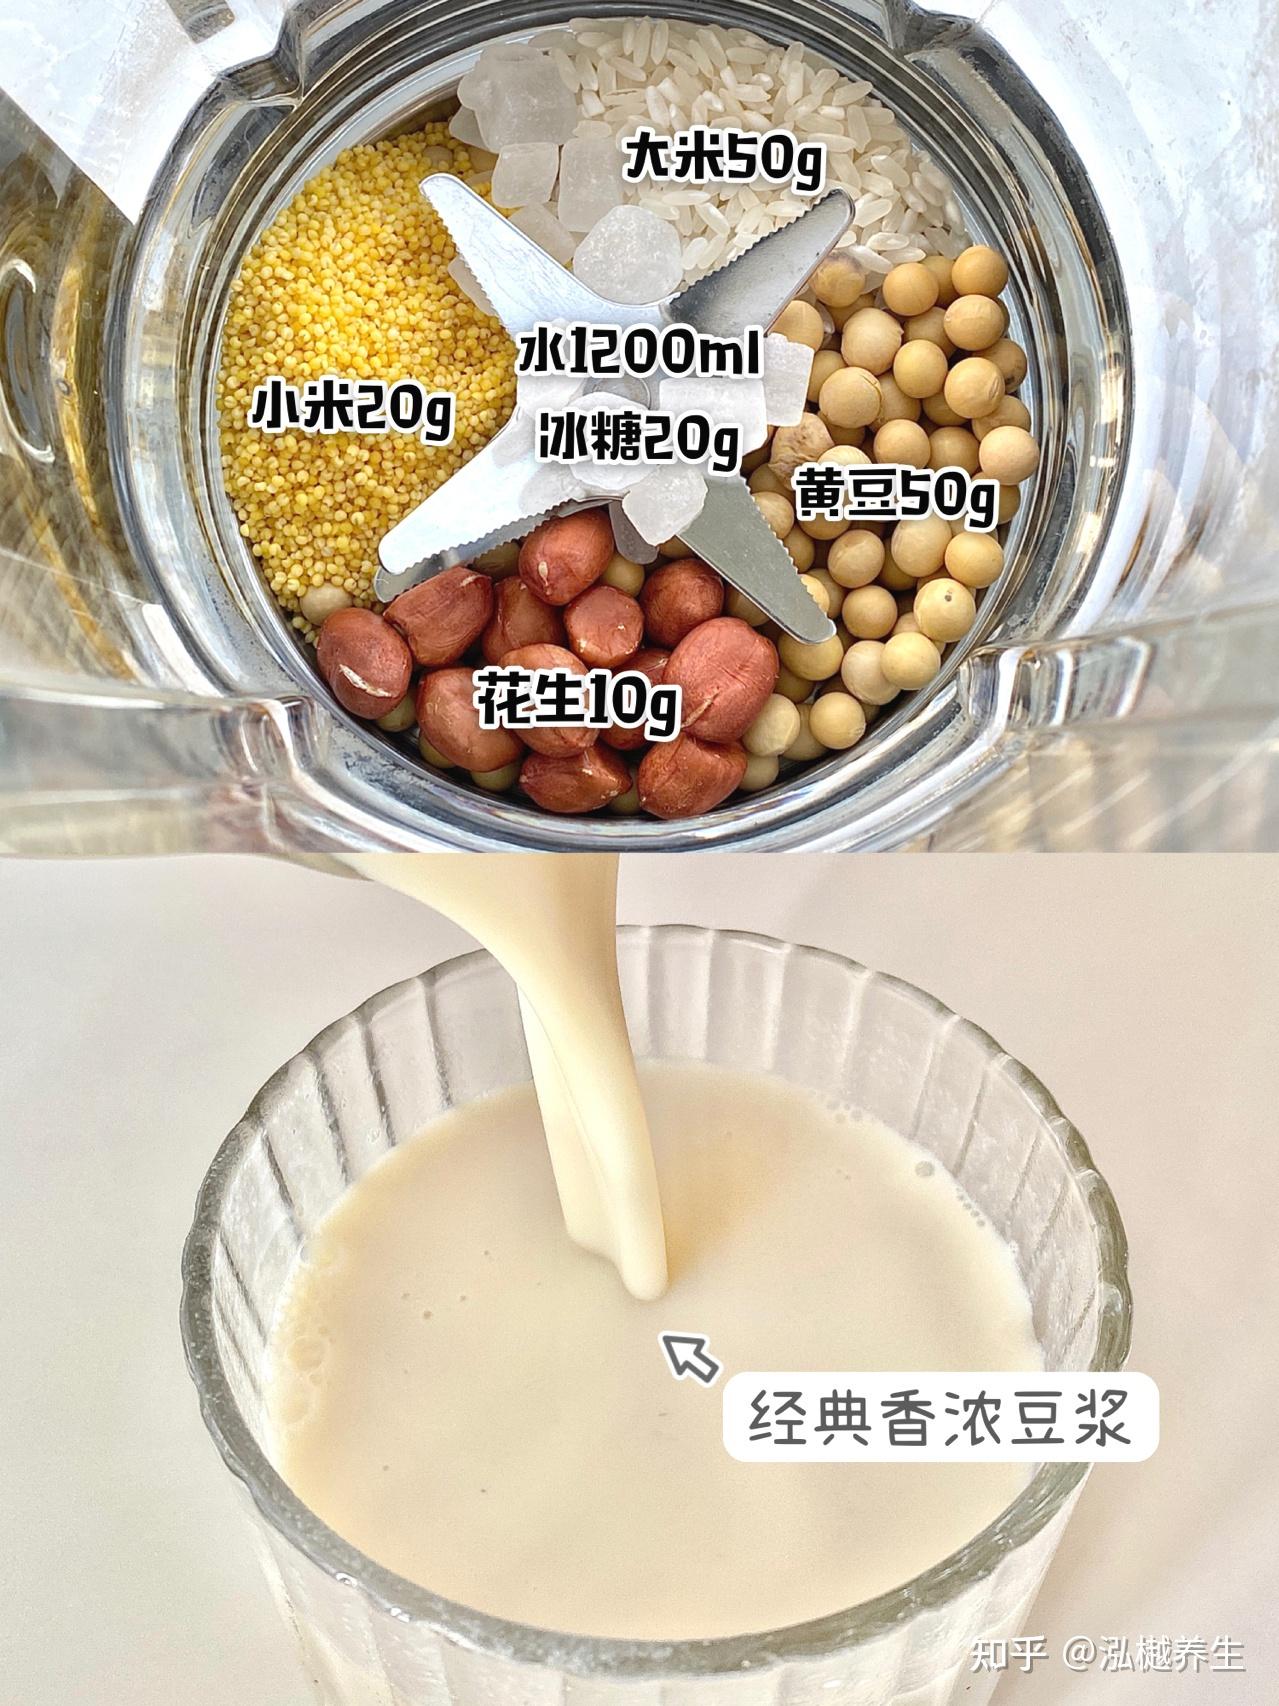 豆浆 - 小桃园-上海梵歌餐饮管理有限公司